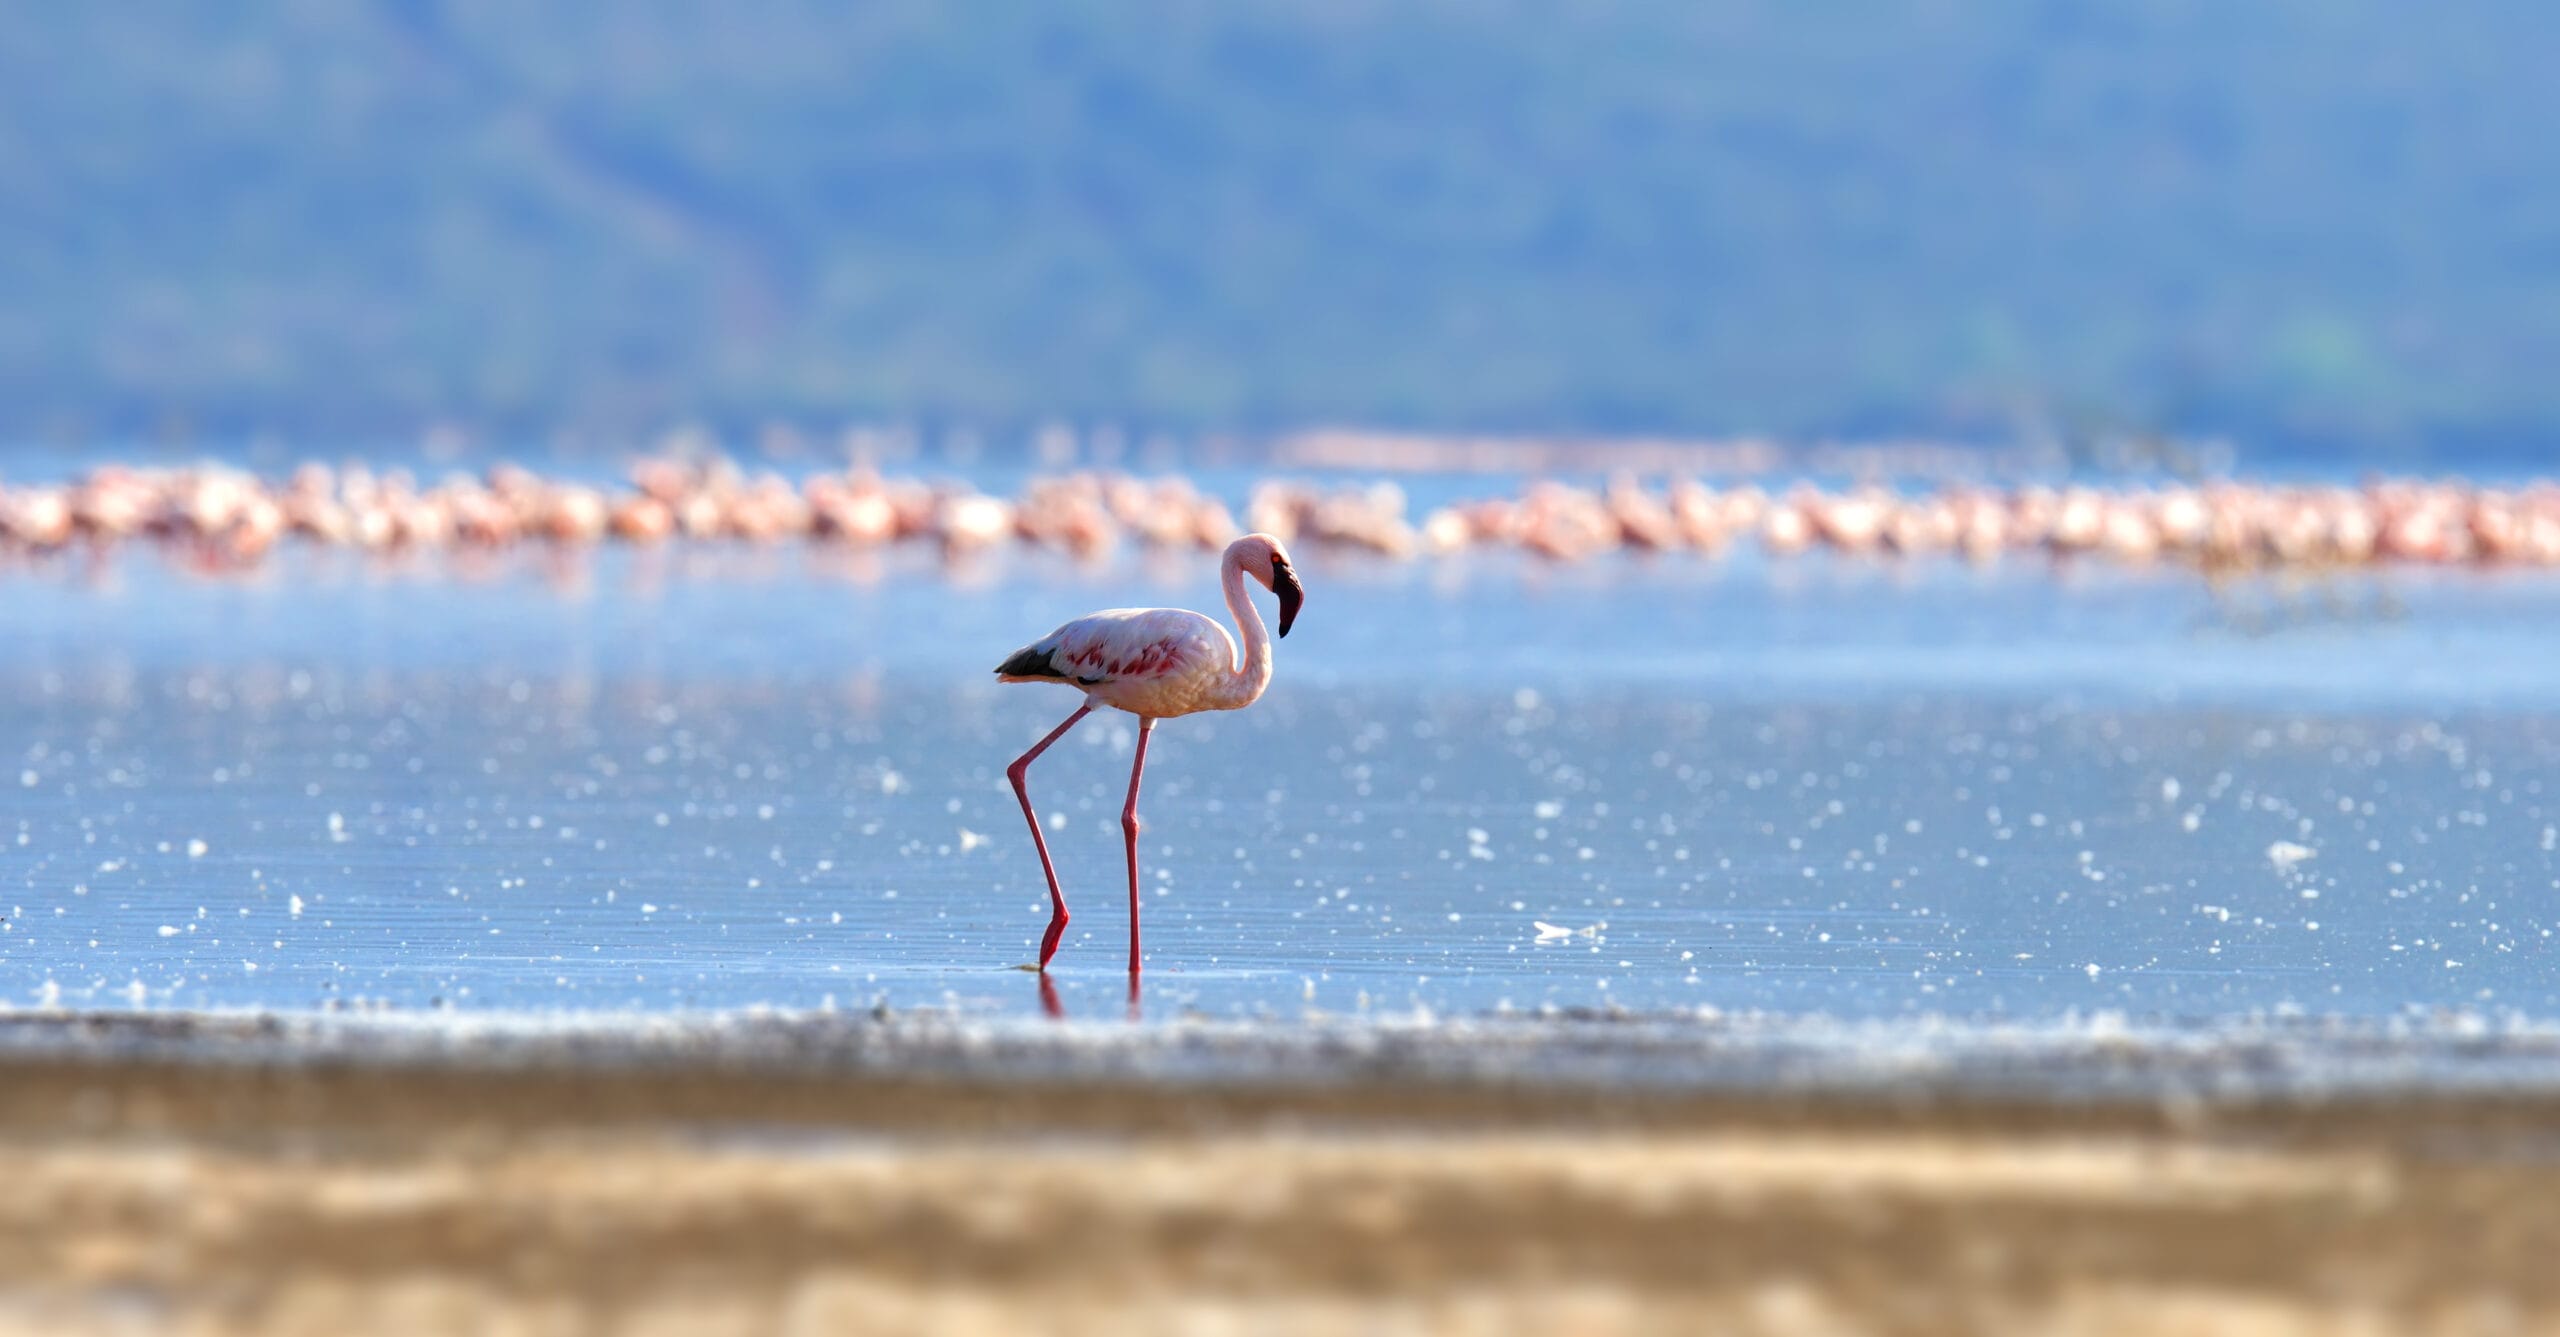 flamingos on lake kenya africa 2021 08 26 15 55 36 utc scaled